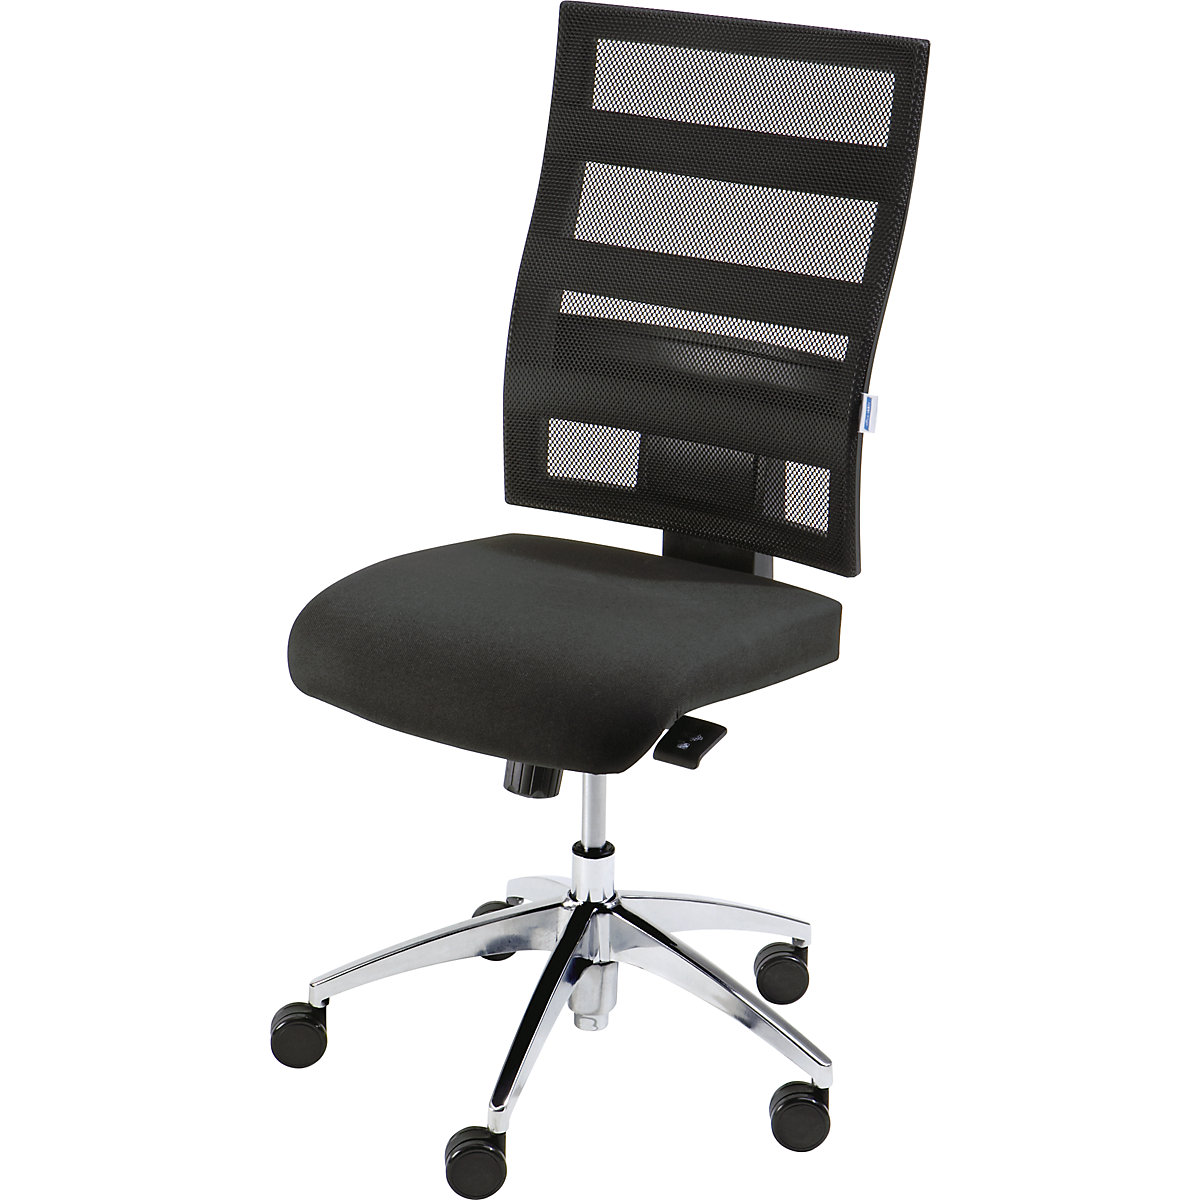 Udobna okretna stolica, visina naslona za leđa 550 mm – eurokraft pro, točkasta sinkrona mehanika, plosnato sjedalo, sjedalo u crnoj boji, mrežasti naslon u crnoj boji-2